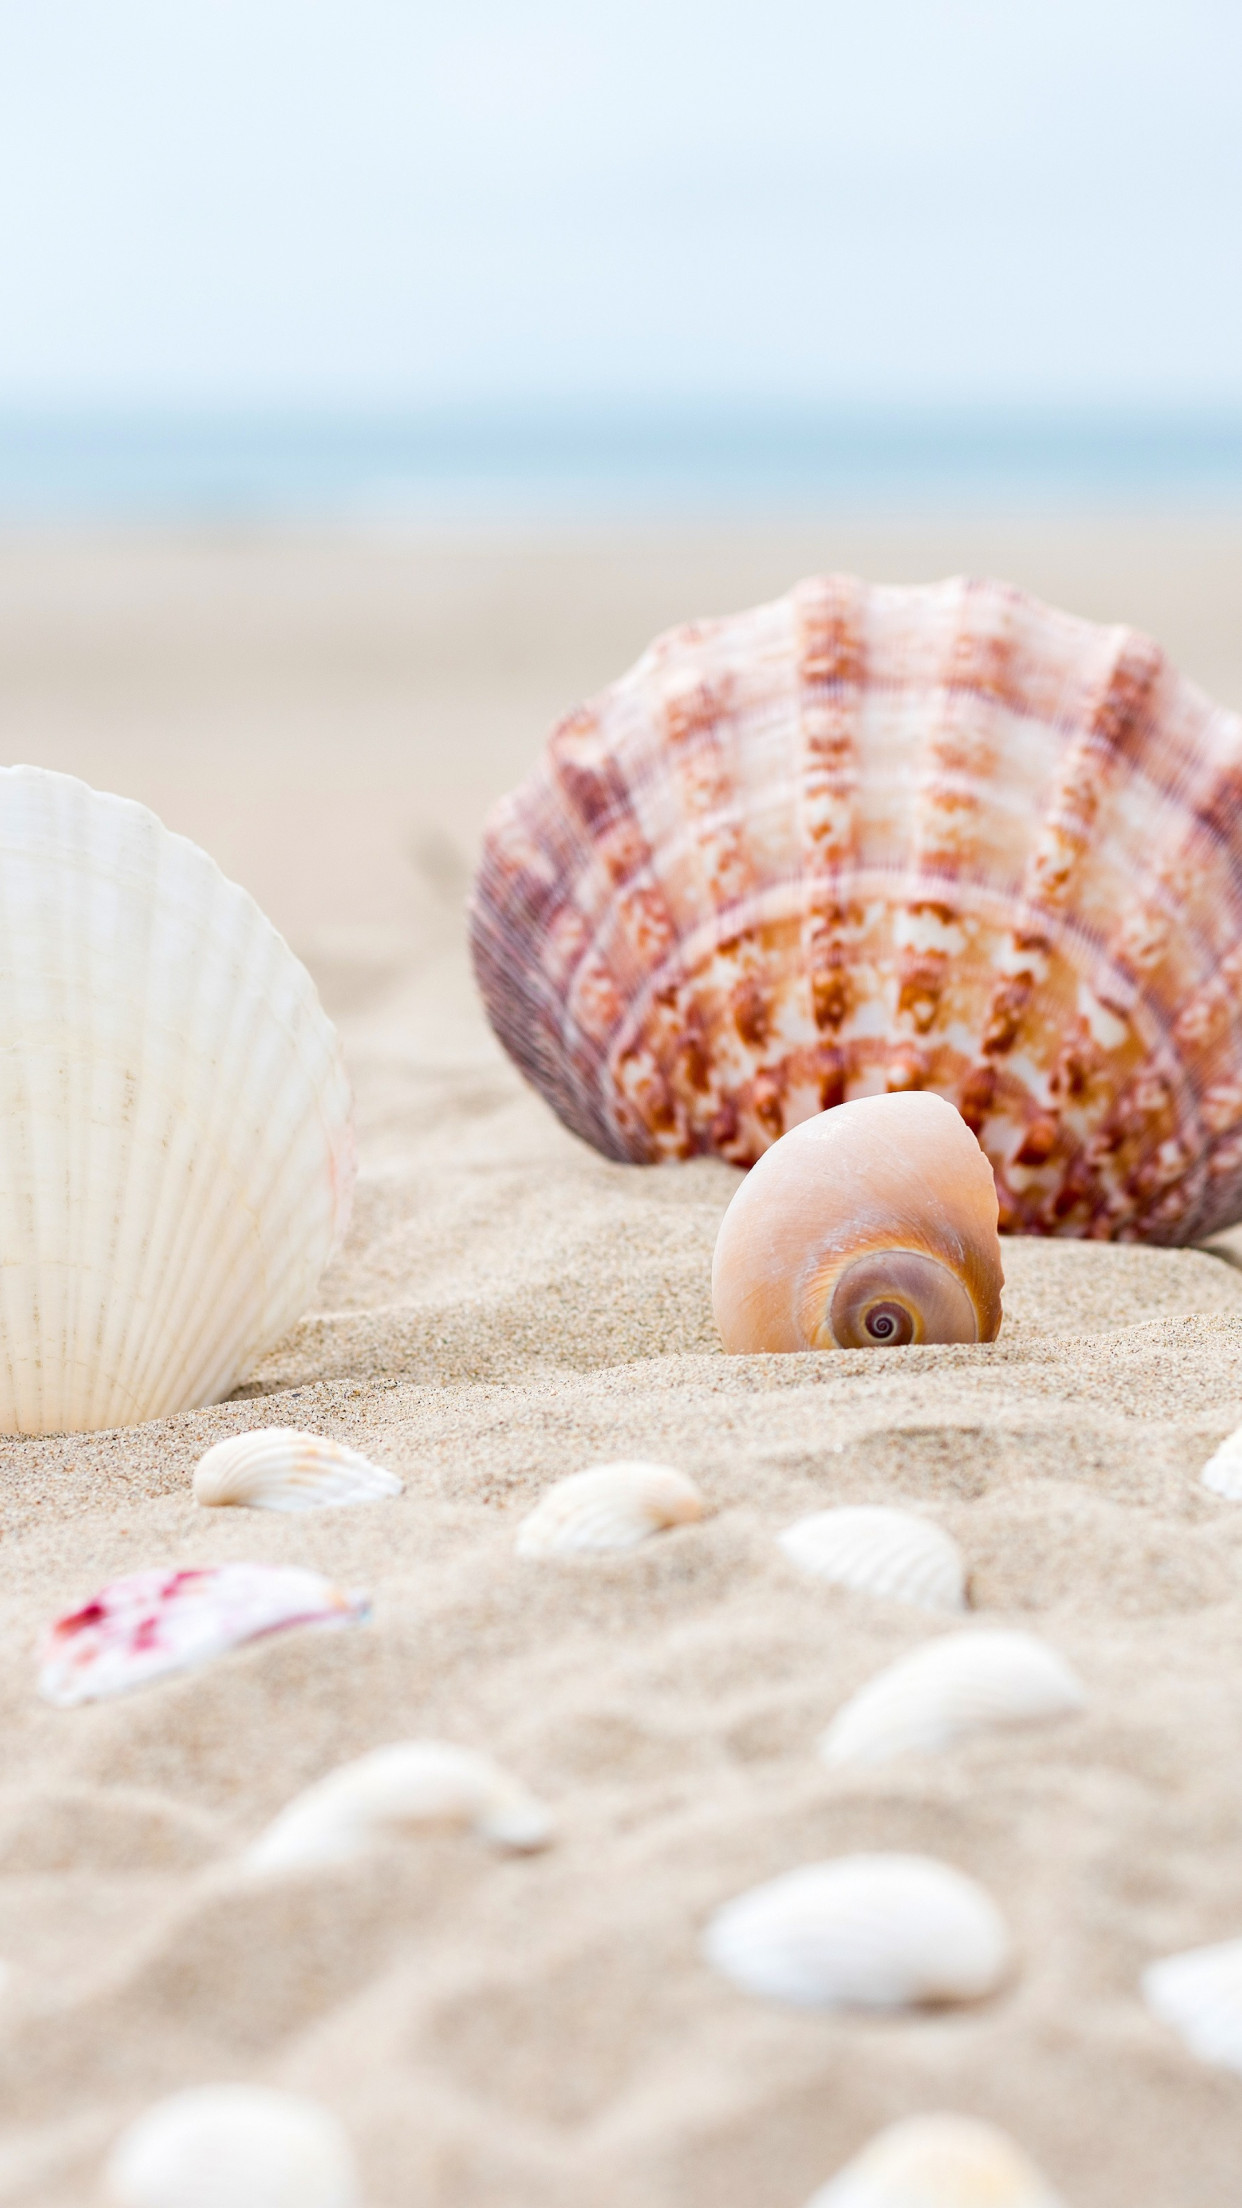 Shells on the ocean beach wallpaper 1242x2208